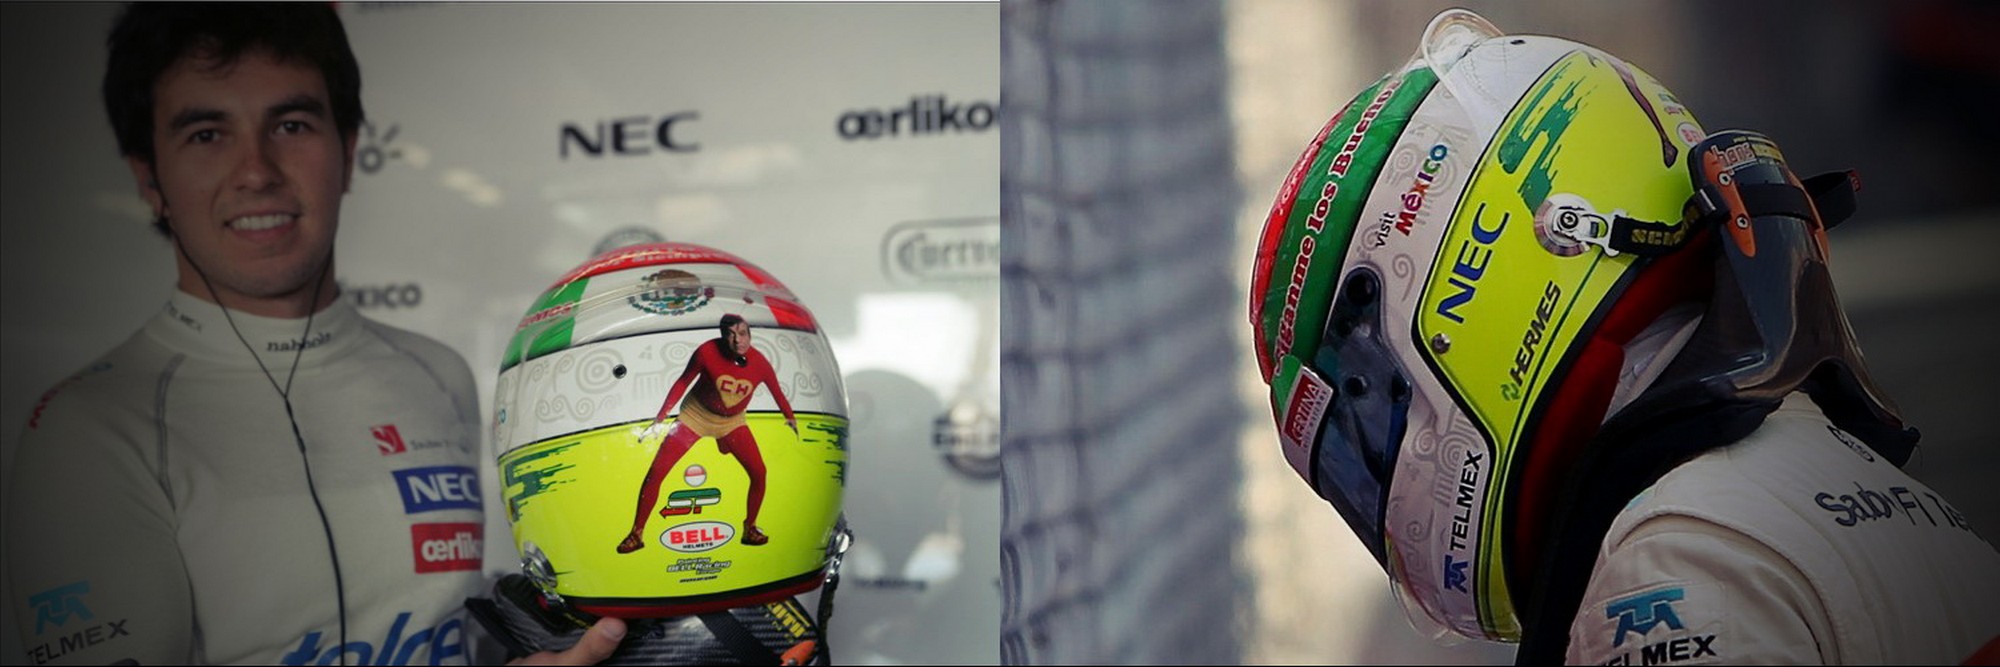 Шлем Серхио Переса на Гран-При Монако 2012 | 2012 Monaco Grand Prix helmet of Sergio Perez